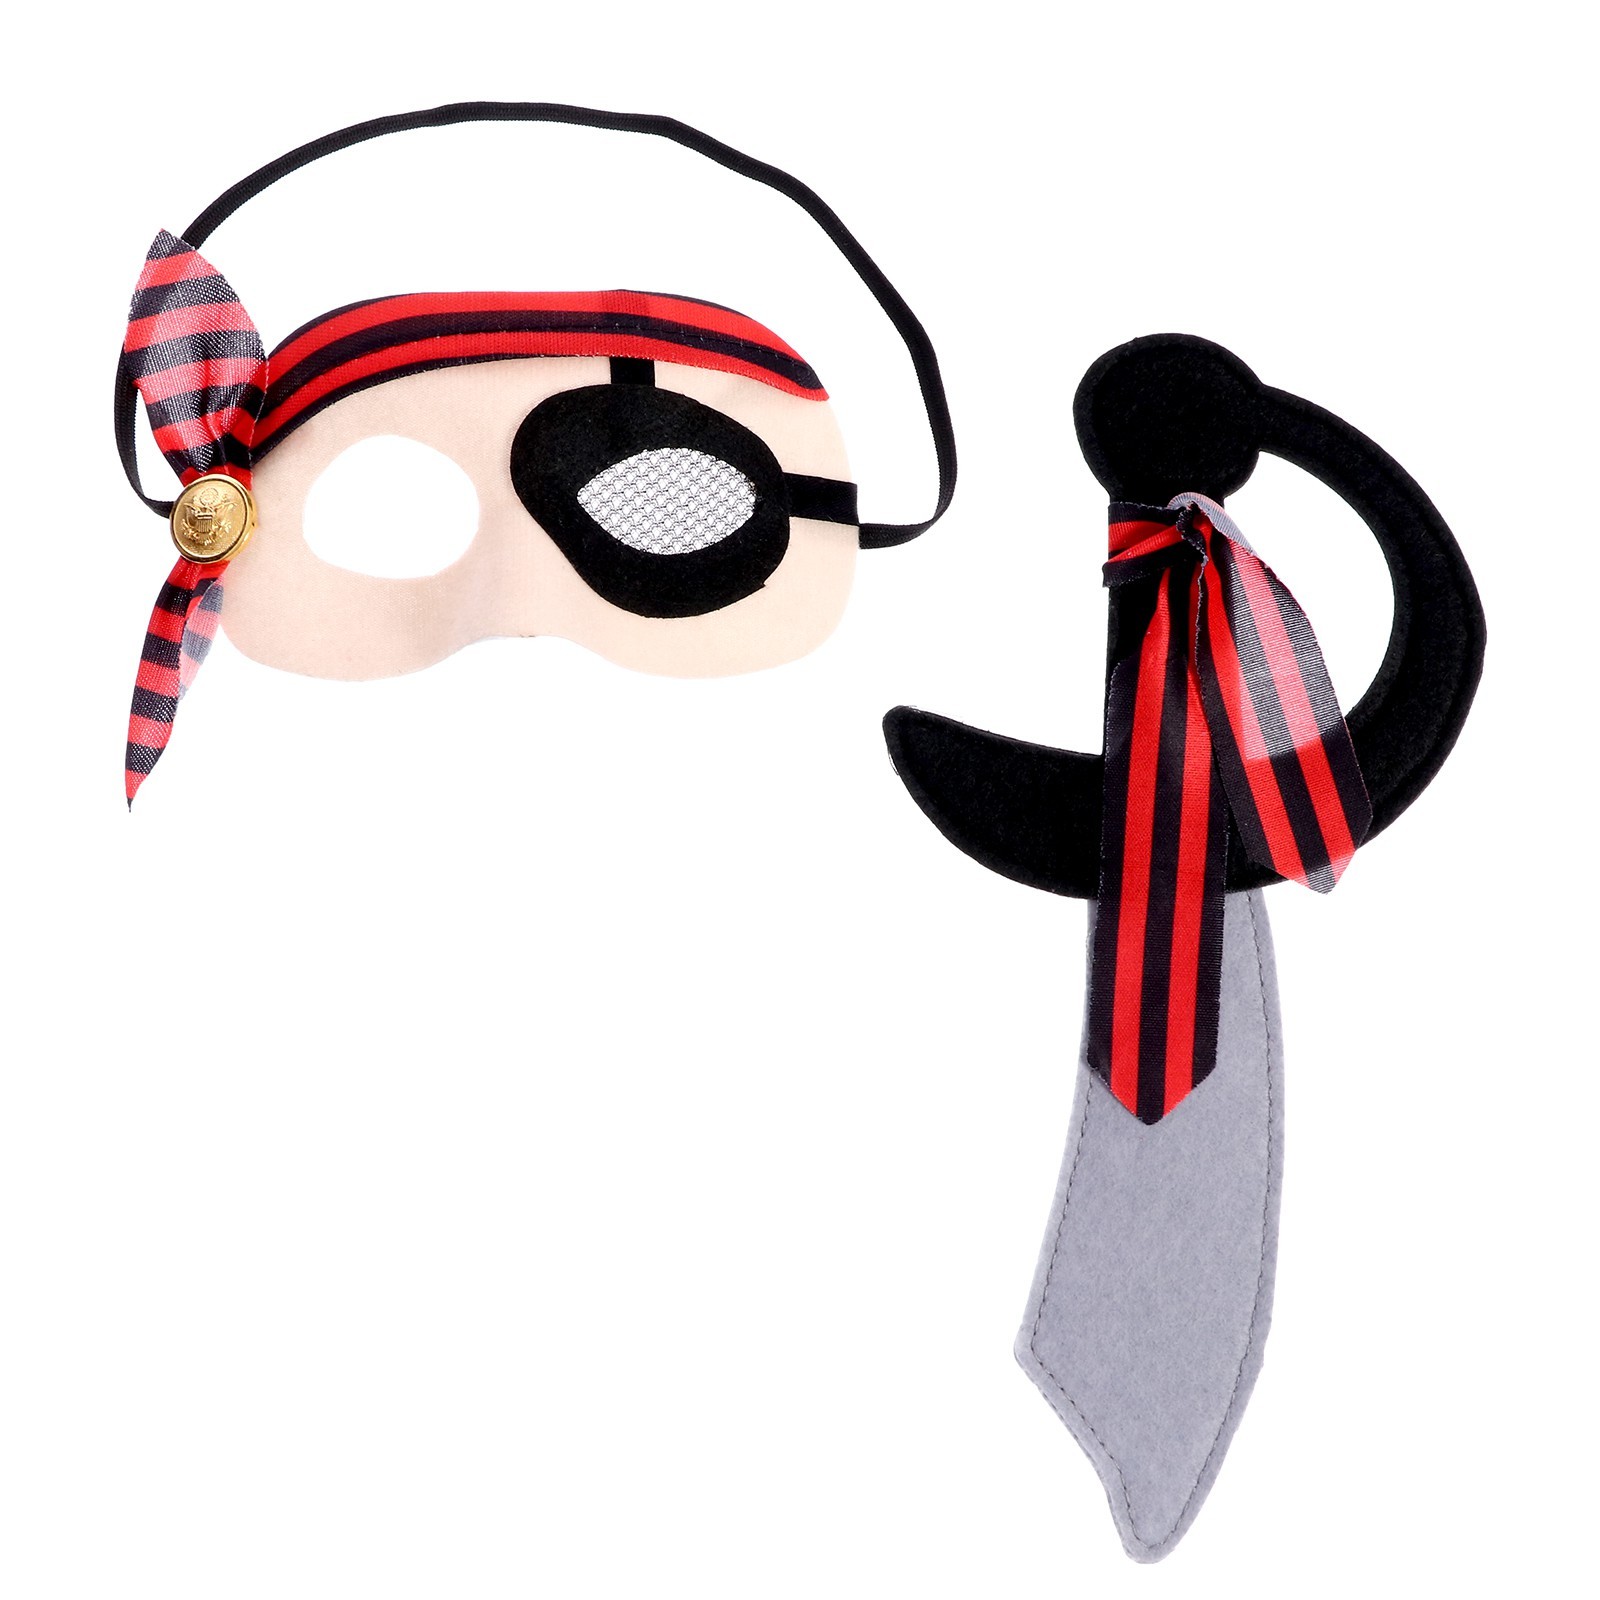 Карнавальный набор Пират, 2 предмета маска, нож карнавальный набор бандана в полоску маска с рогами чёрная термонаклейка